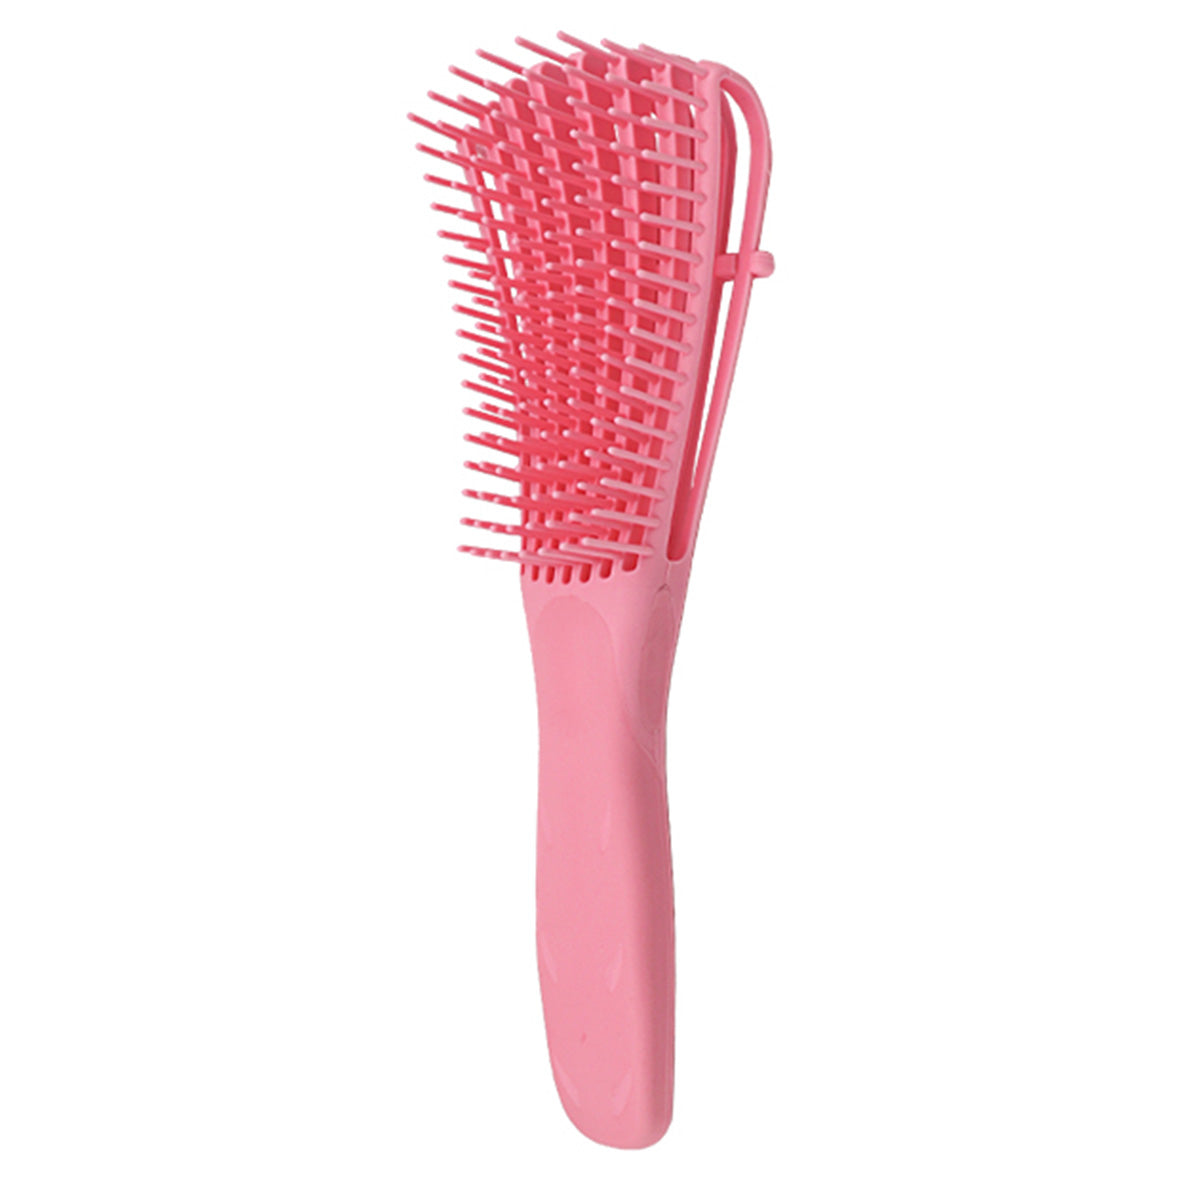 4 Color Detangling Brush Set Detangler Brush for Natural Black Hair Curly Hairk Dry and Wet Hair Scalp Massager Shampoo Brush